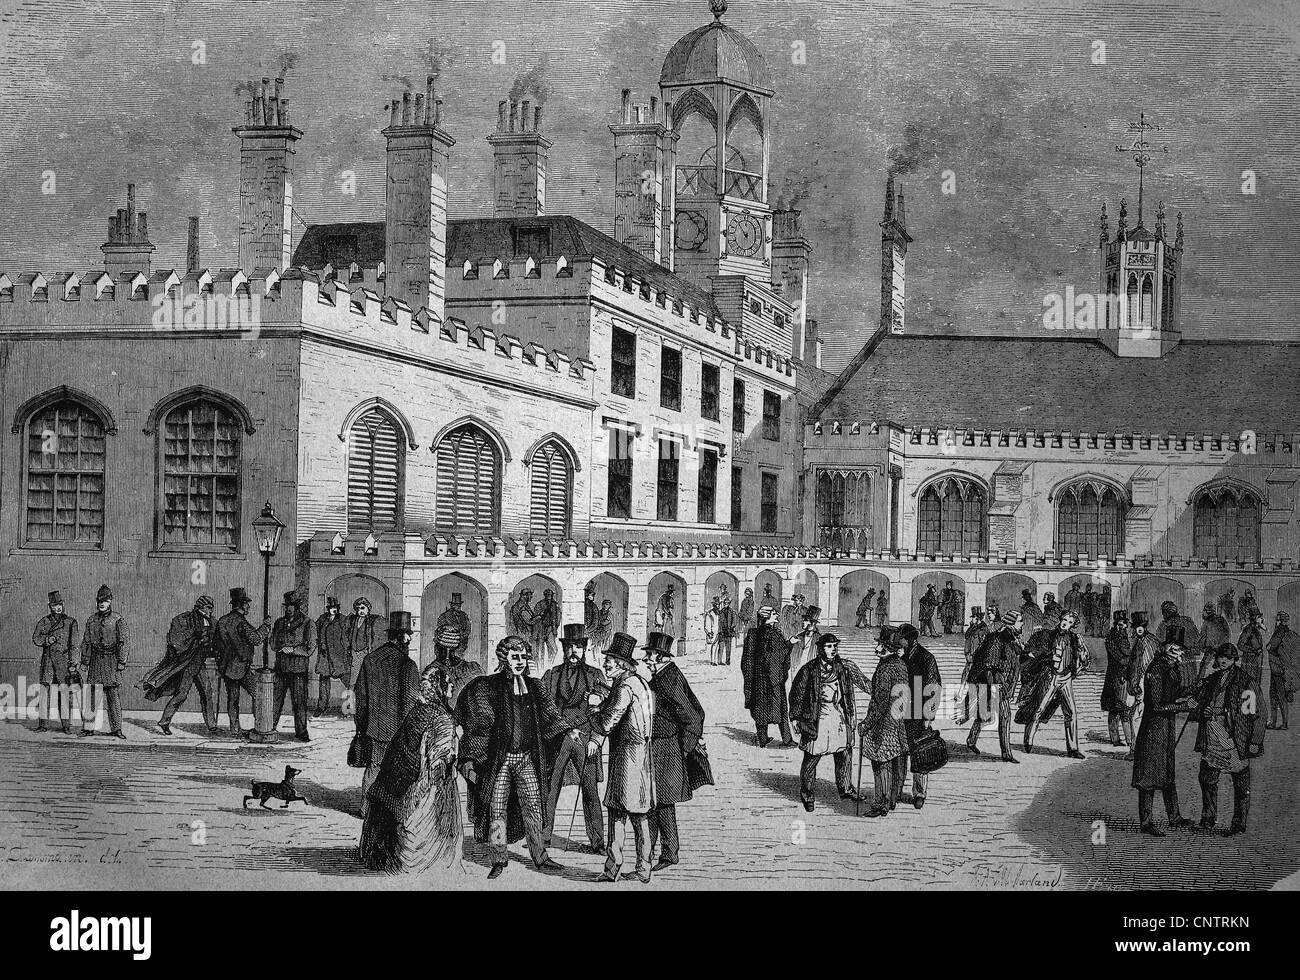 Royal Courts of Justice, Londres, Angleterre, Royaume-Uni, historique gravure sur bois, vers 1870 Banque D'Images